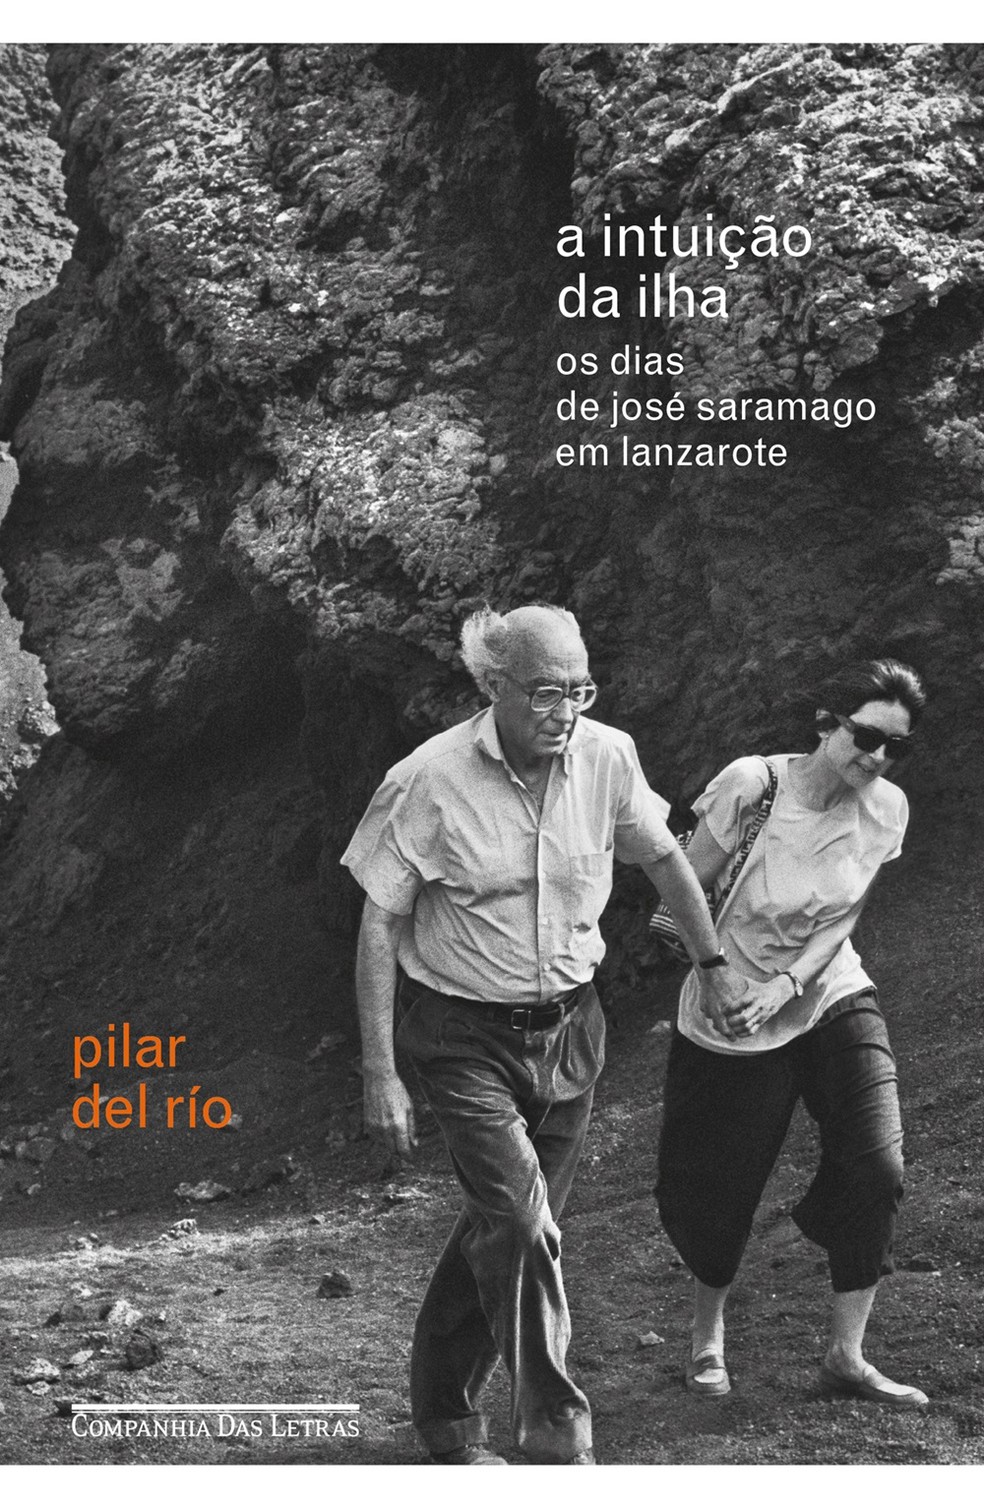 Capa de "A intuição da ilha", livro de Pilar del Río, publicado pela Companhia das Letras — Foto: Divulgação